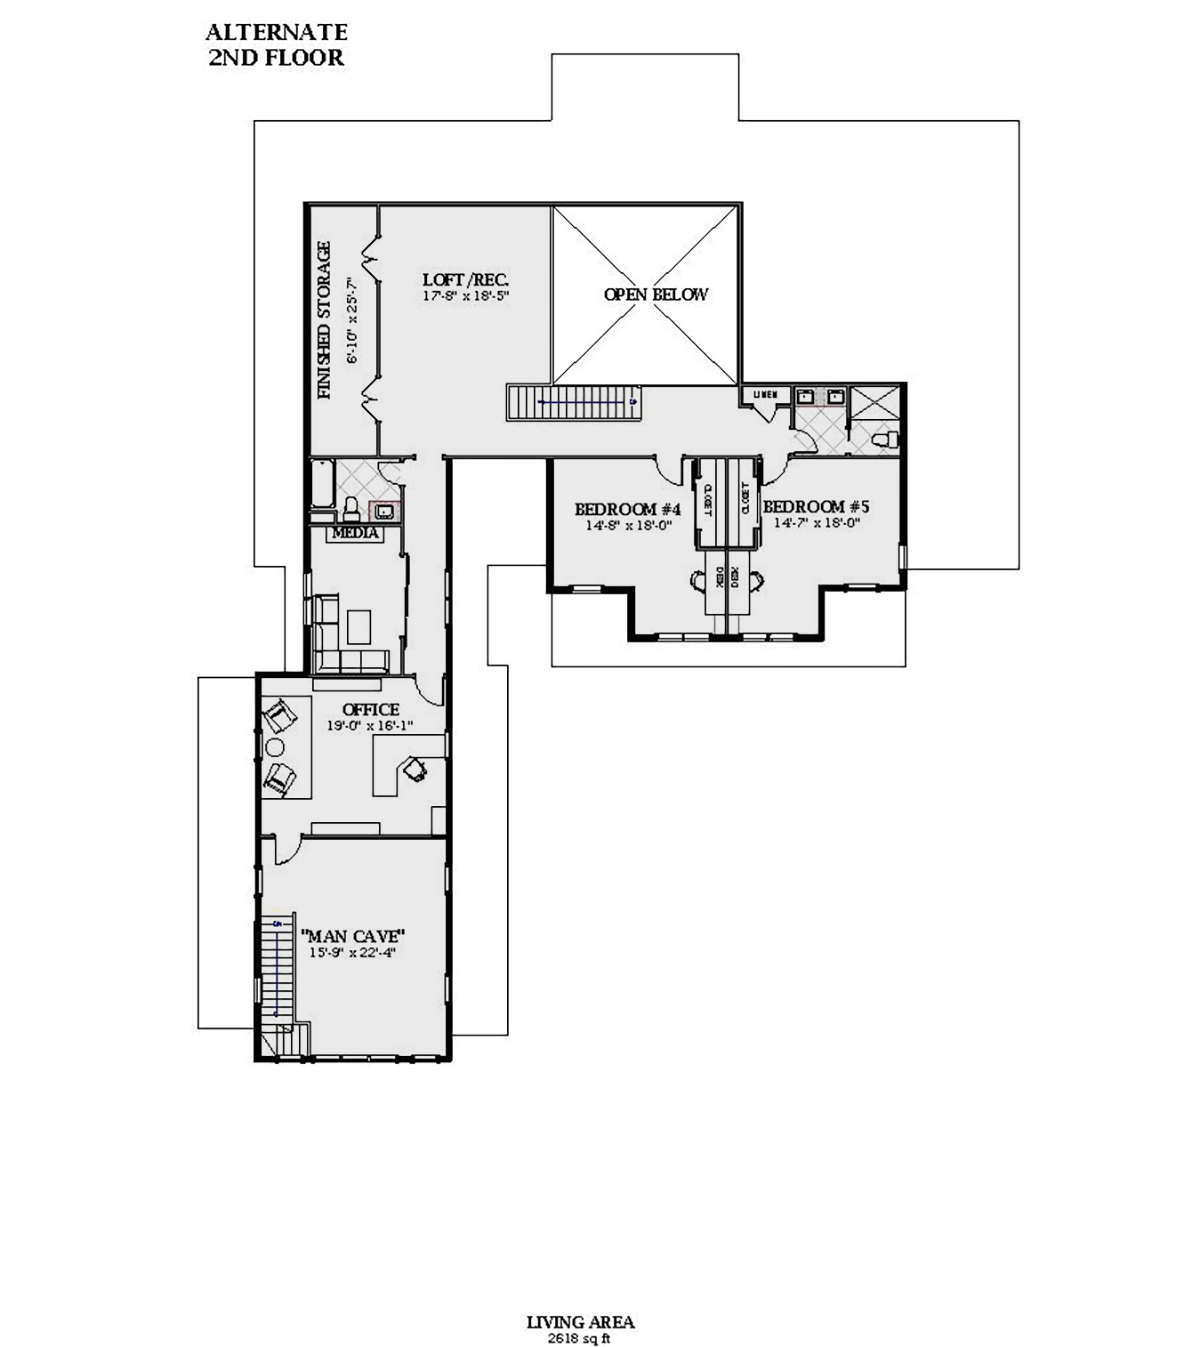 Alternate Second Floor for House Plan #6849-00090